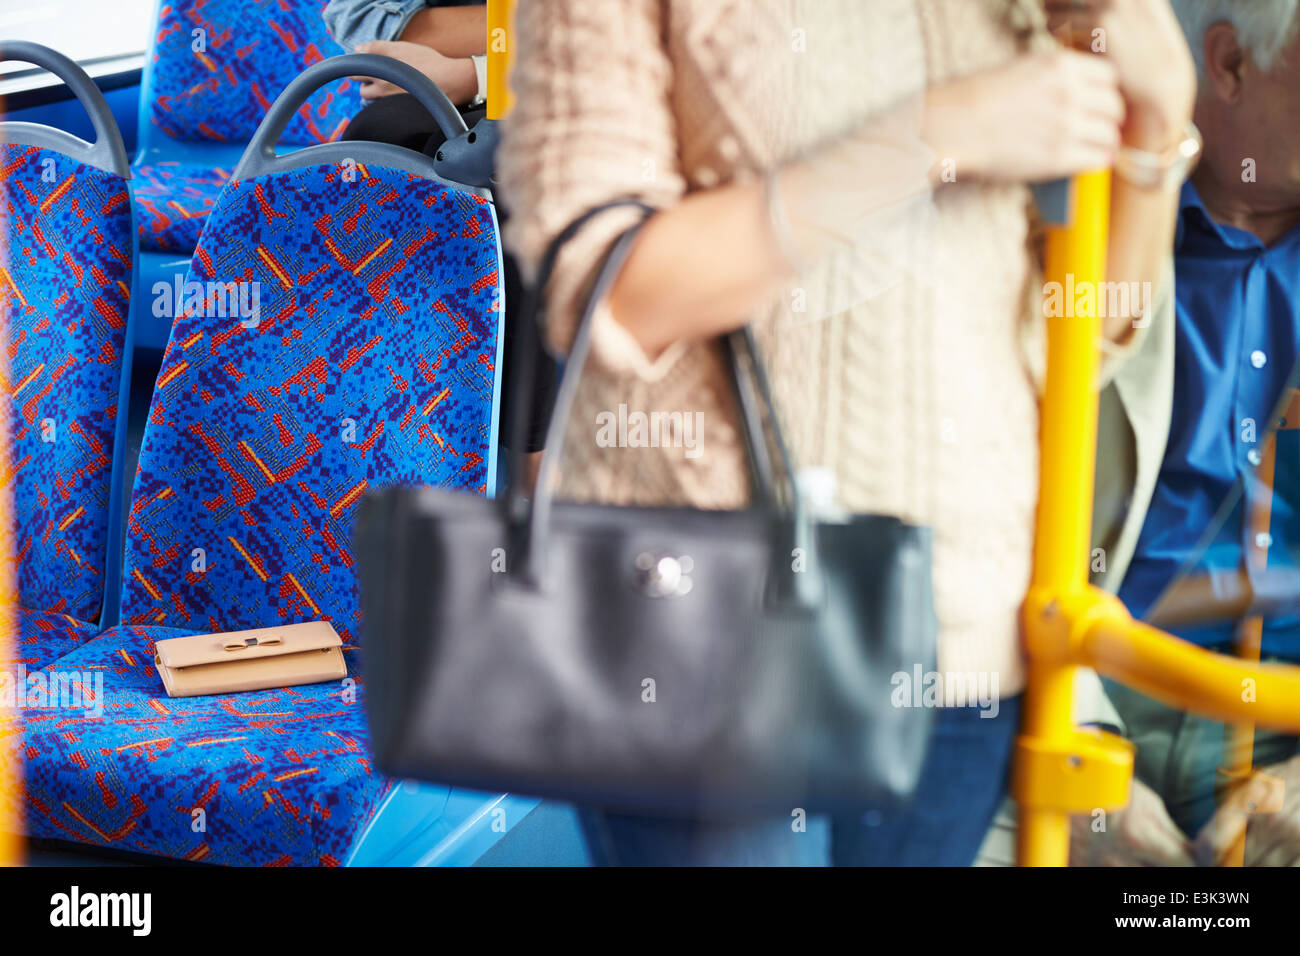 Dejar pasajeros monedero en el asiento de autobús Foto de stock